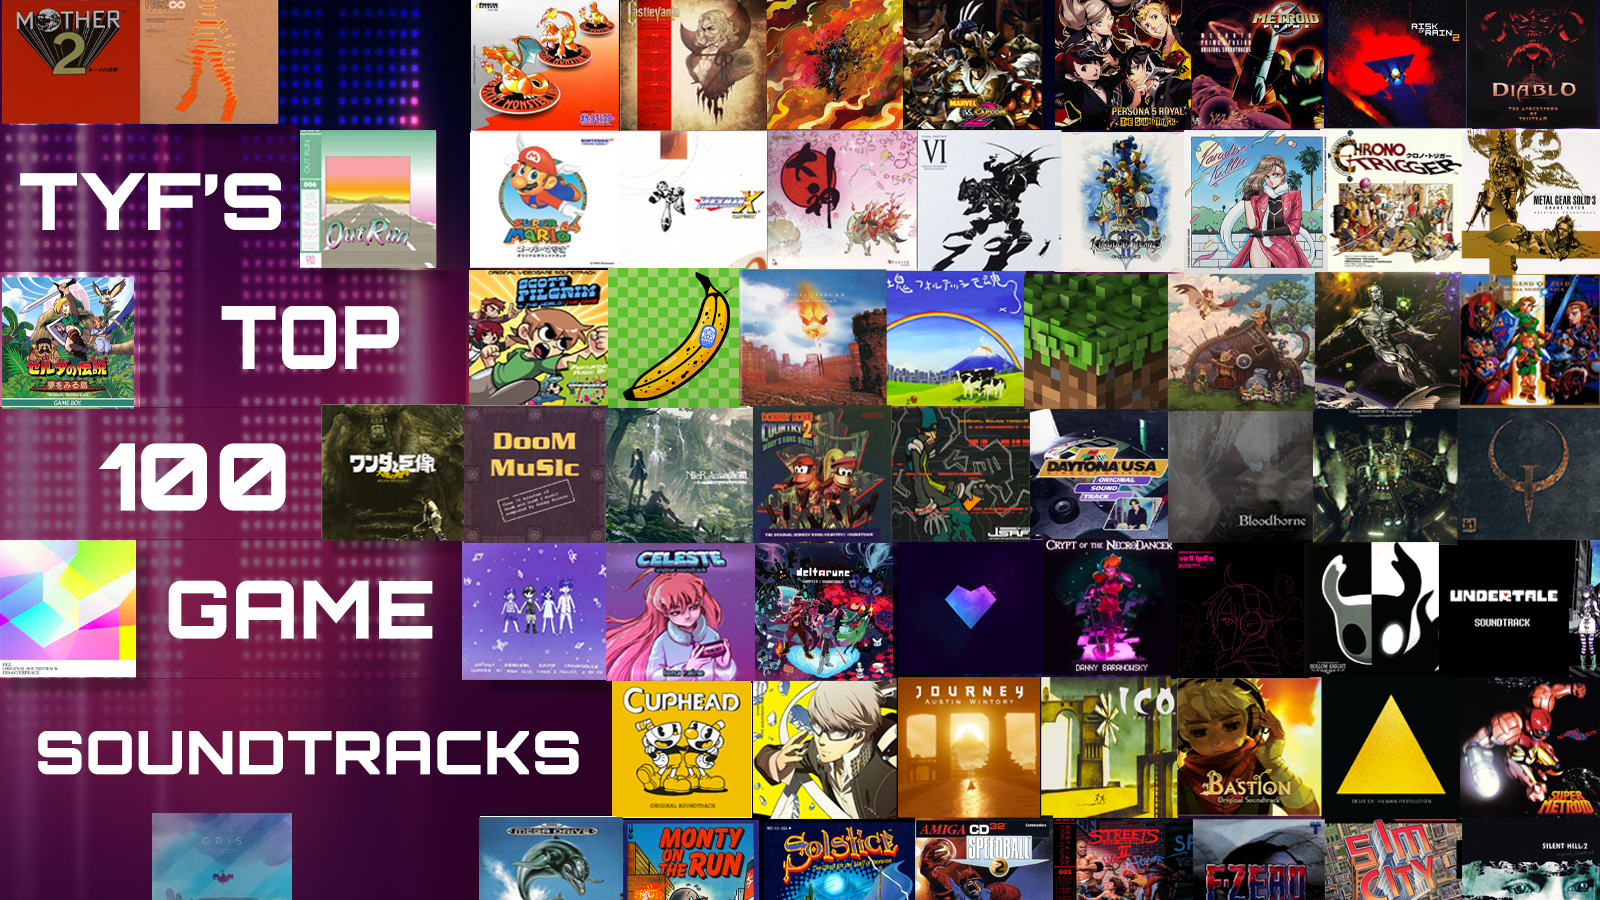 Top 10 - Musicas SNES as melhores musicas dos jogos da nintendo 